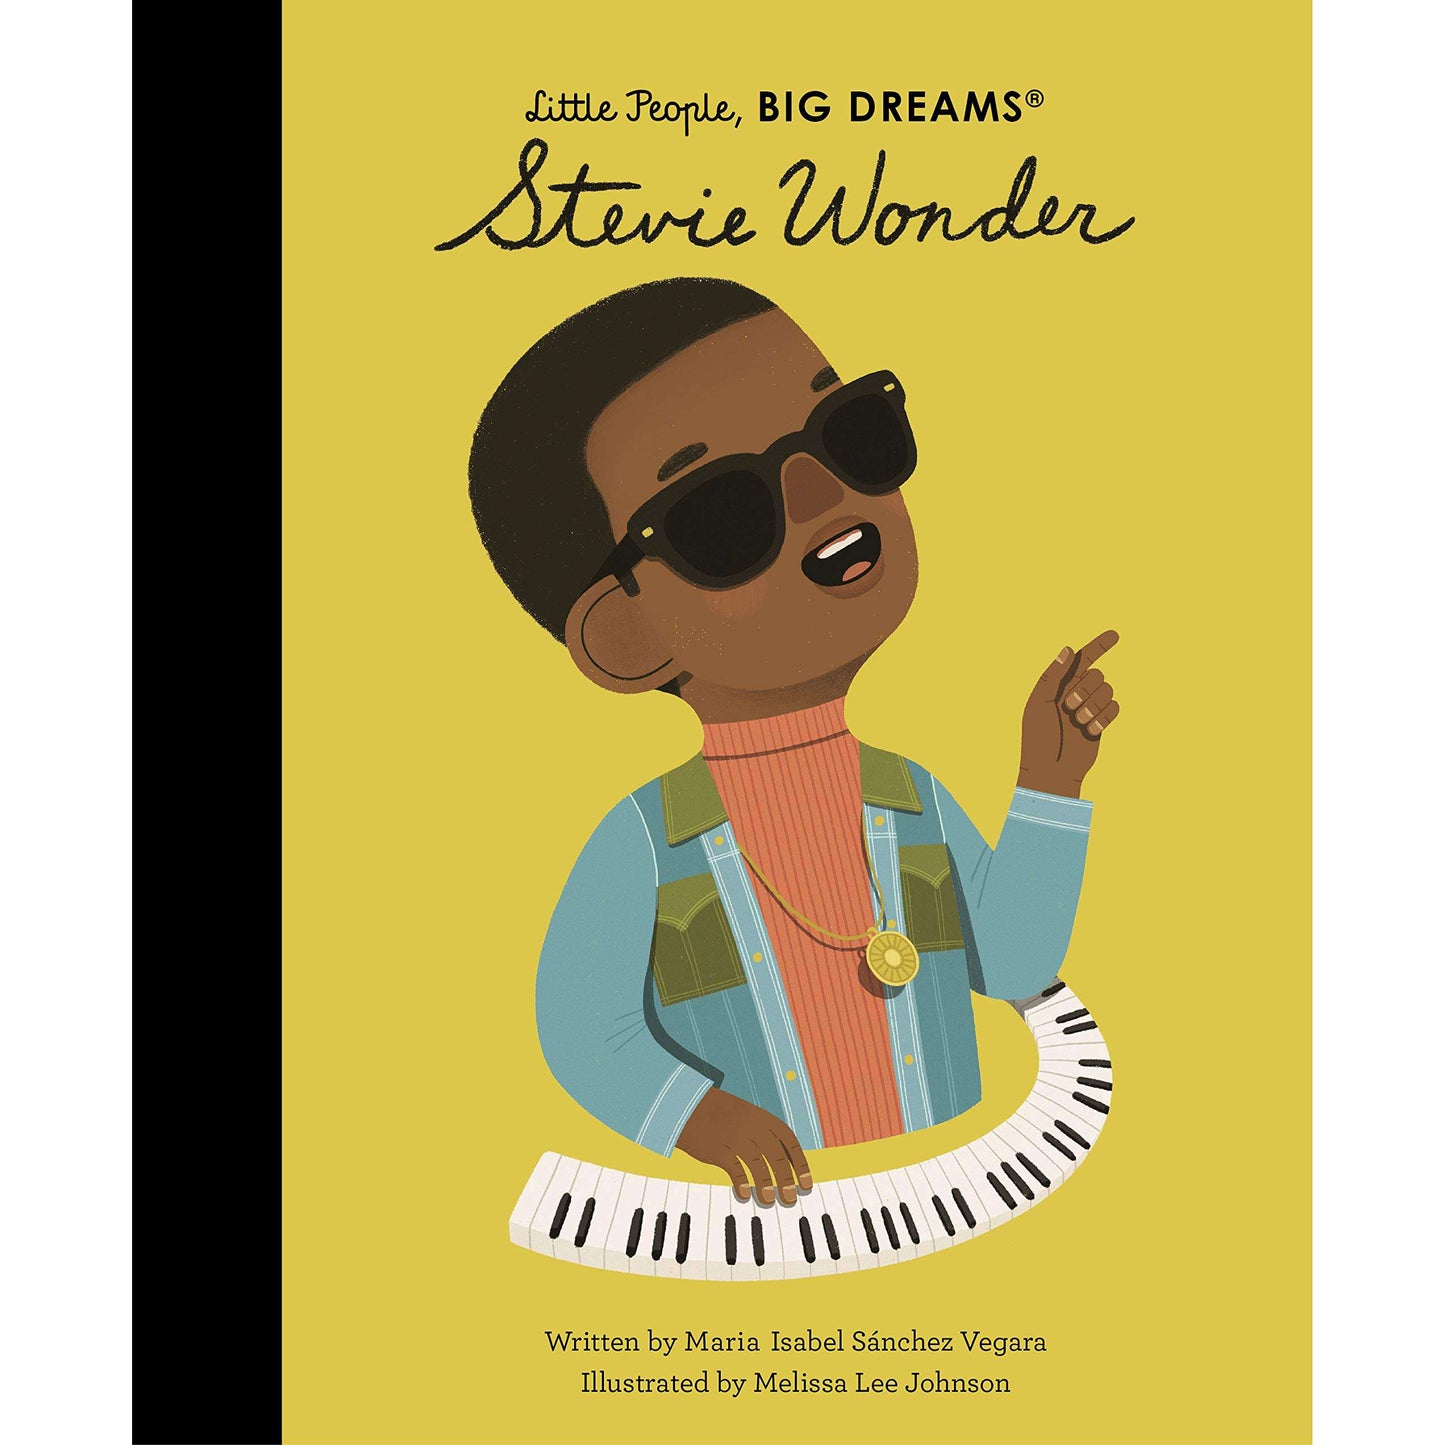 Little People Big Dreams: Stevie Wonder